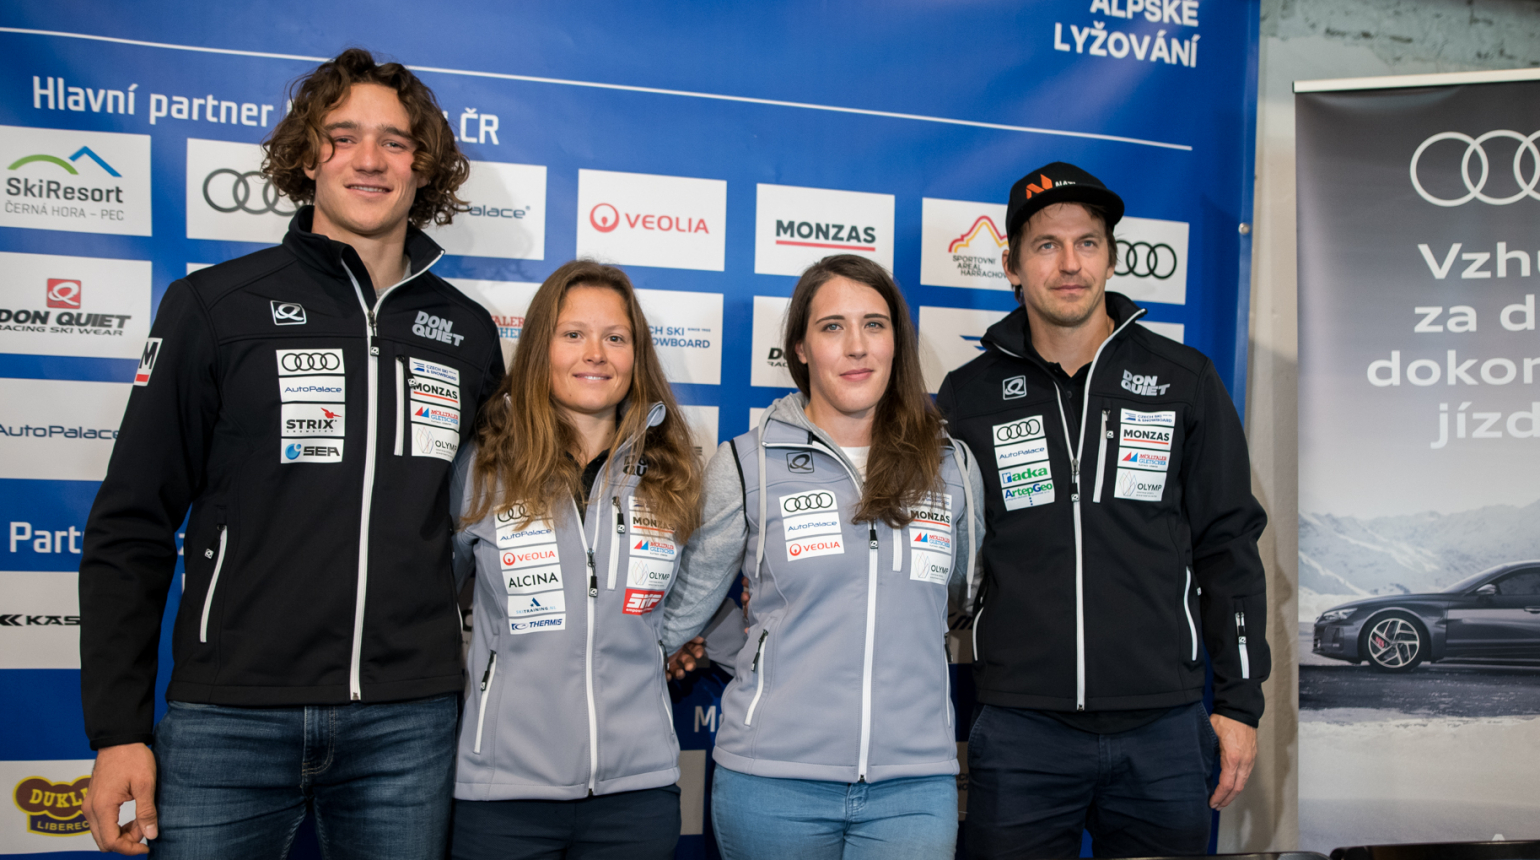 Nová sezóna, nové výzvy. Jelínková posílila české alpské lyžování, vrcholem budou domácí Světový pohár a MS